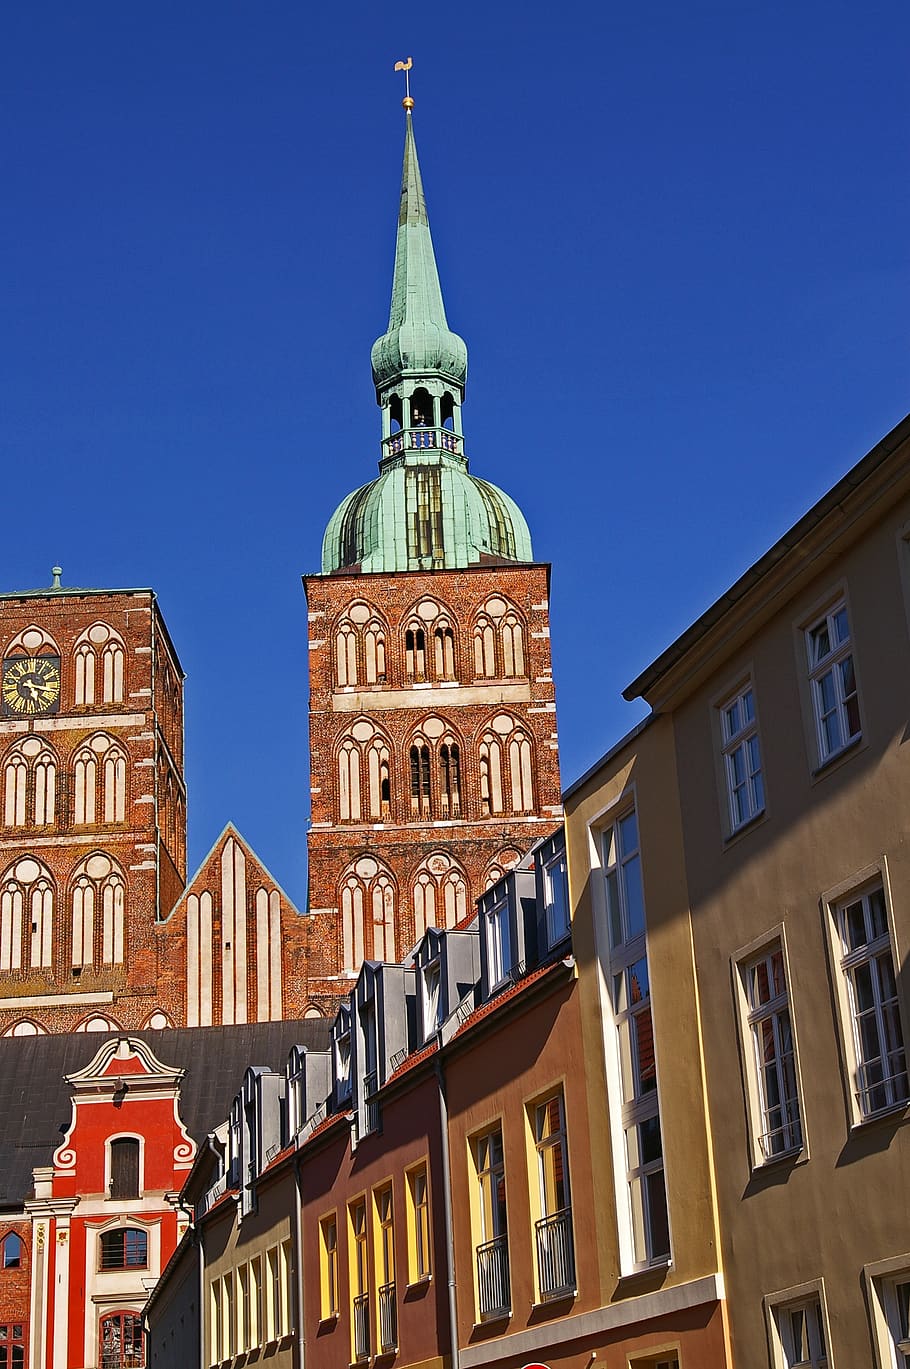 stralsund, nikolai church, architecture, facade, bell tower